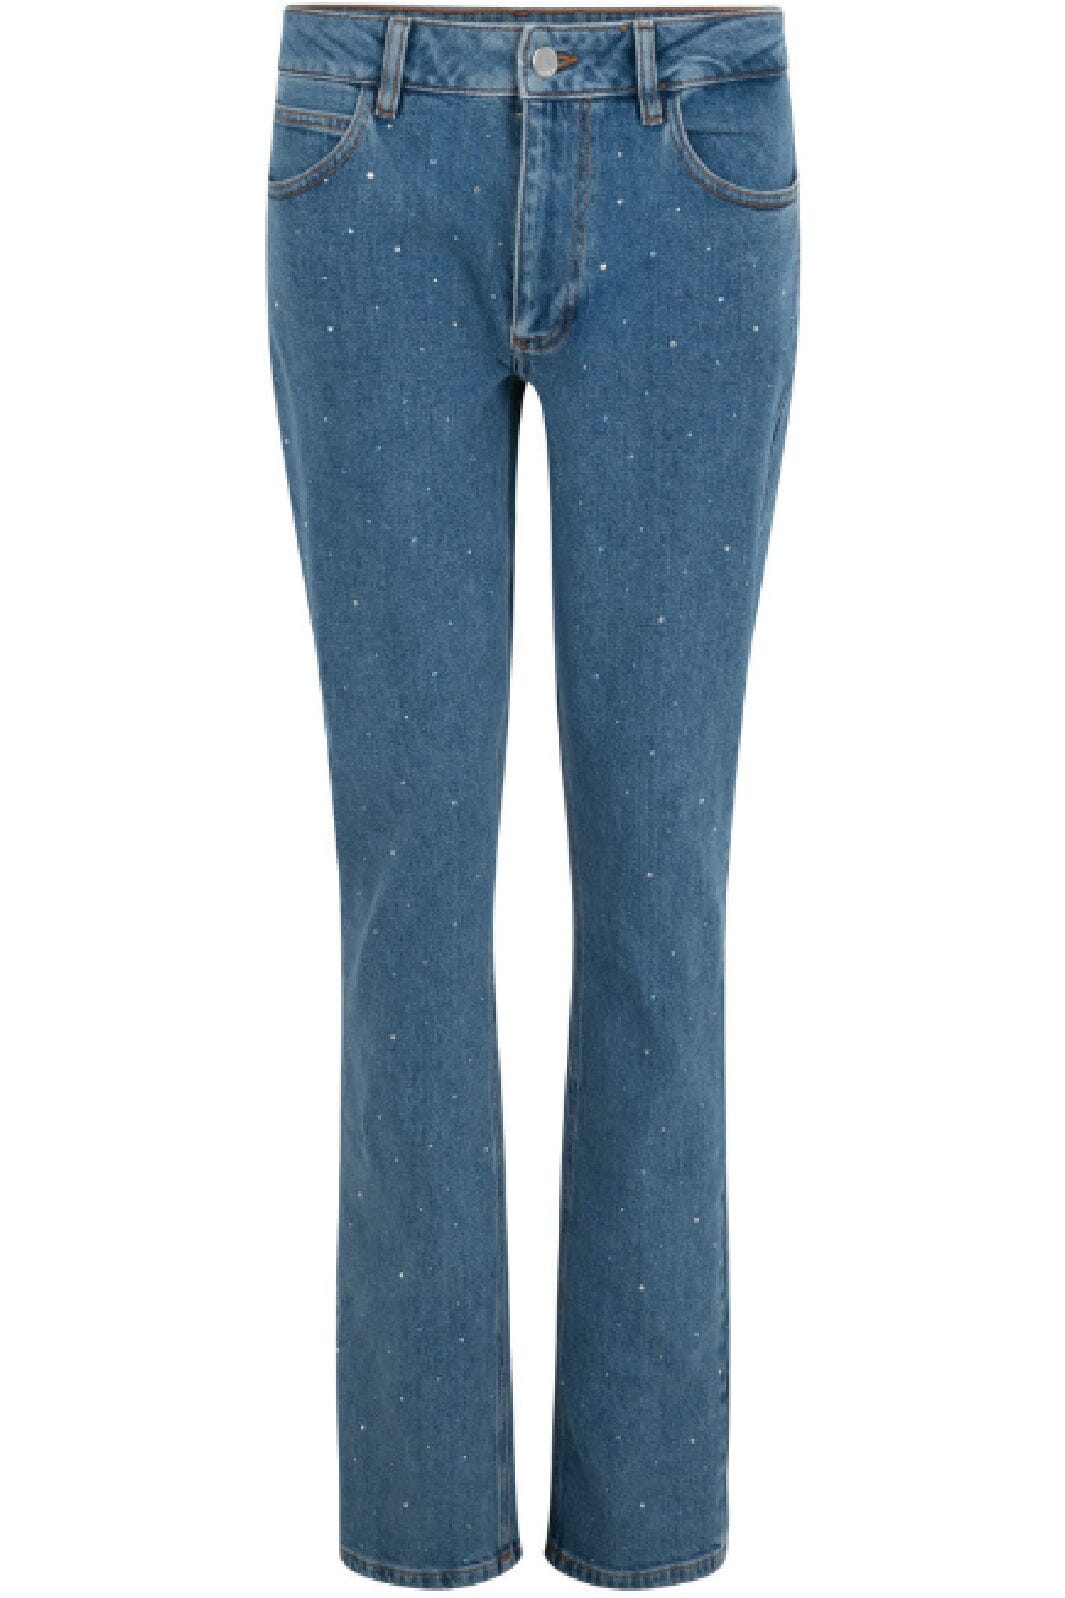 Cras - Amandacras Jeans - Medium Indigo Jeans 